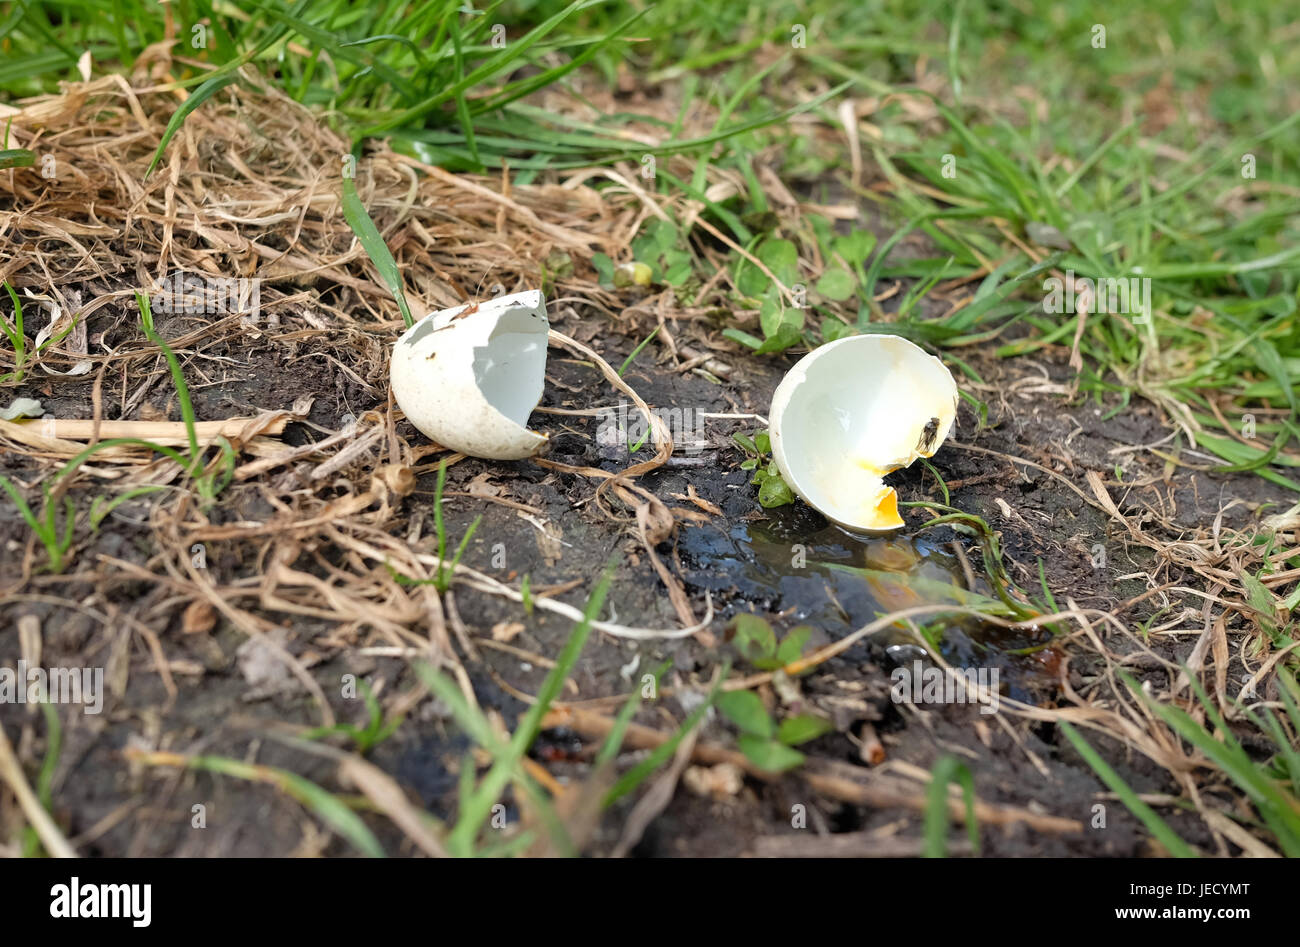 Aprile 2017 - uovo d'anatra in arrugginito dopo essere stato predato Foto Stock